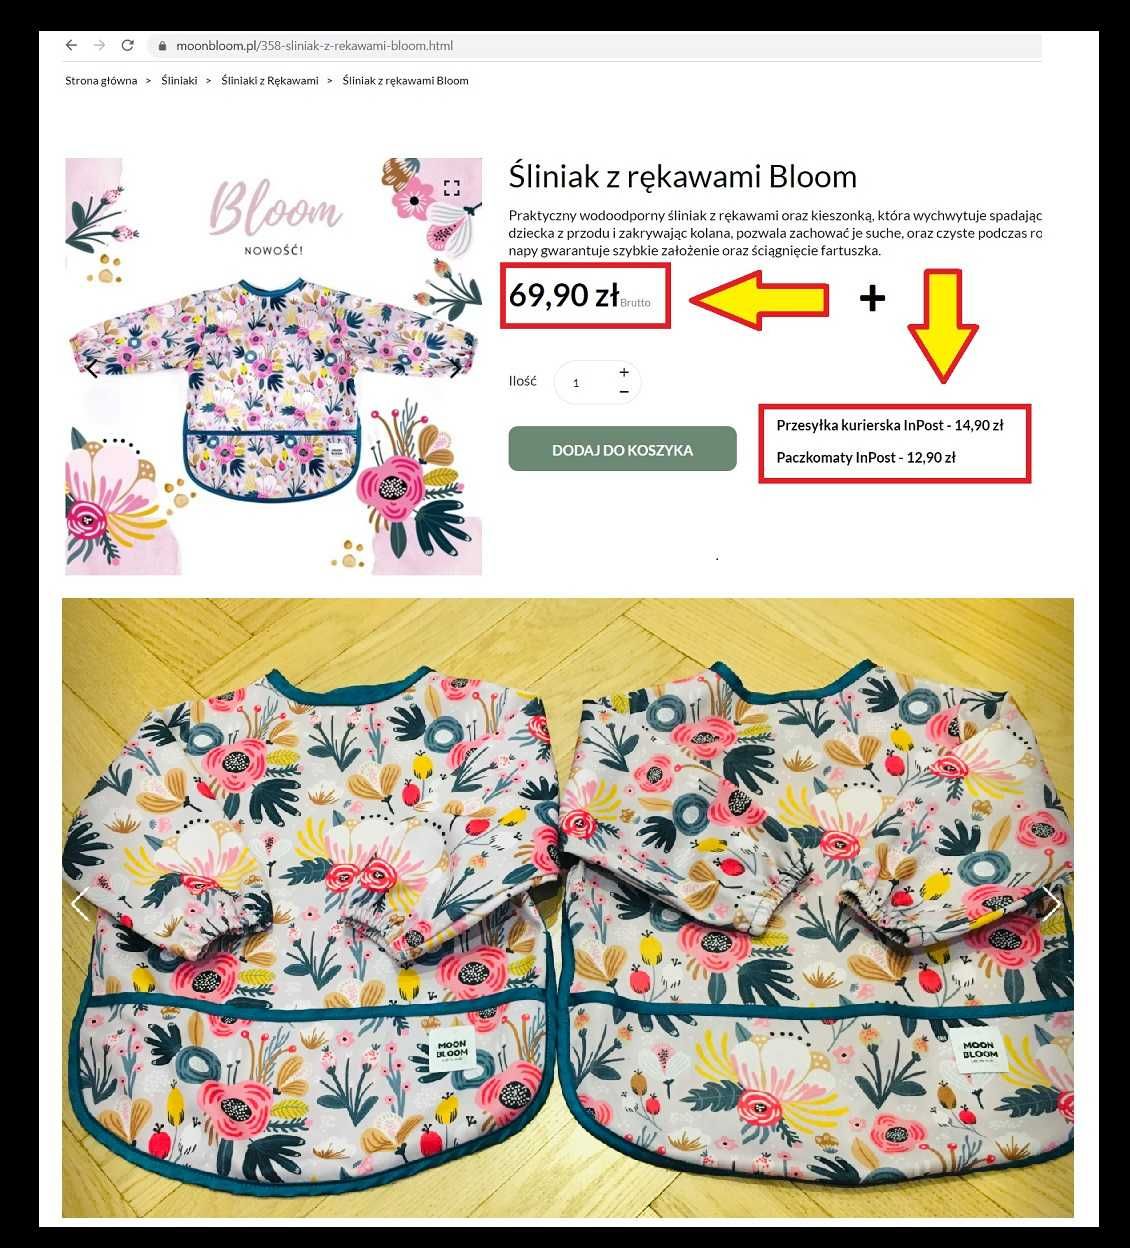 ZESTAW Body spodnie spiochy czapki bliźniaczki Zara Newbie Moon bloom!